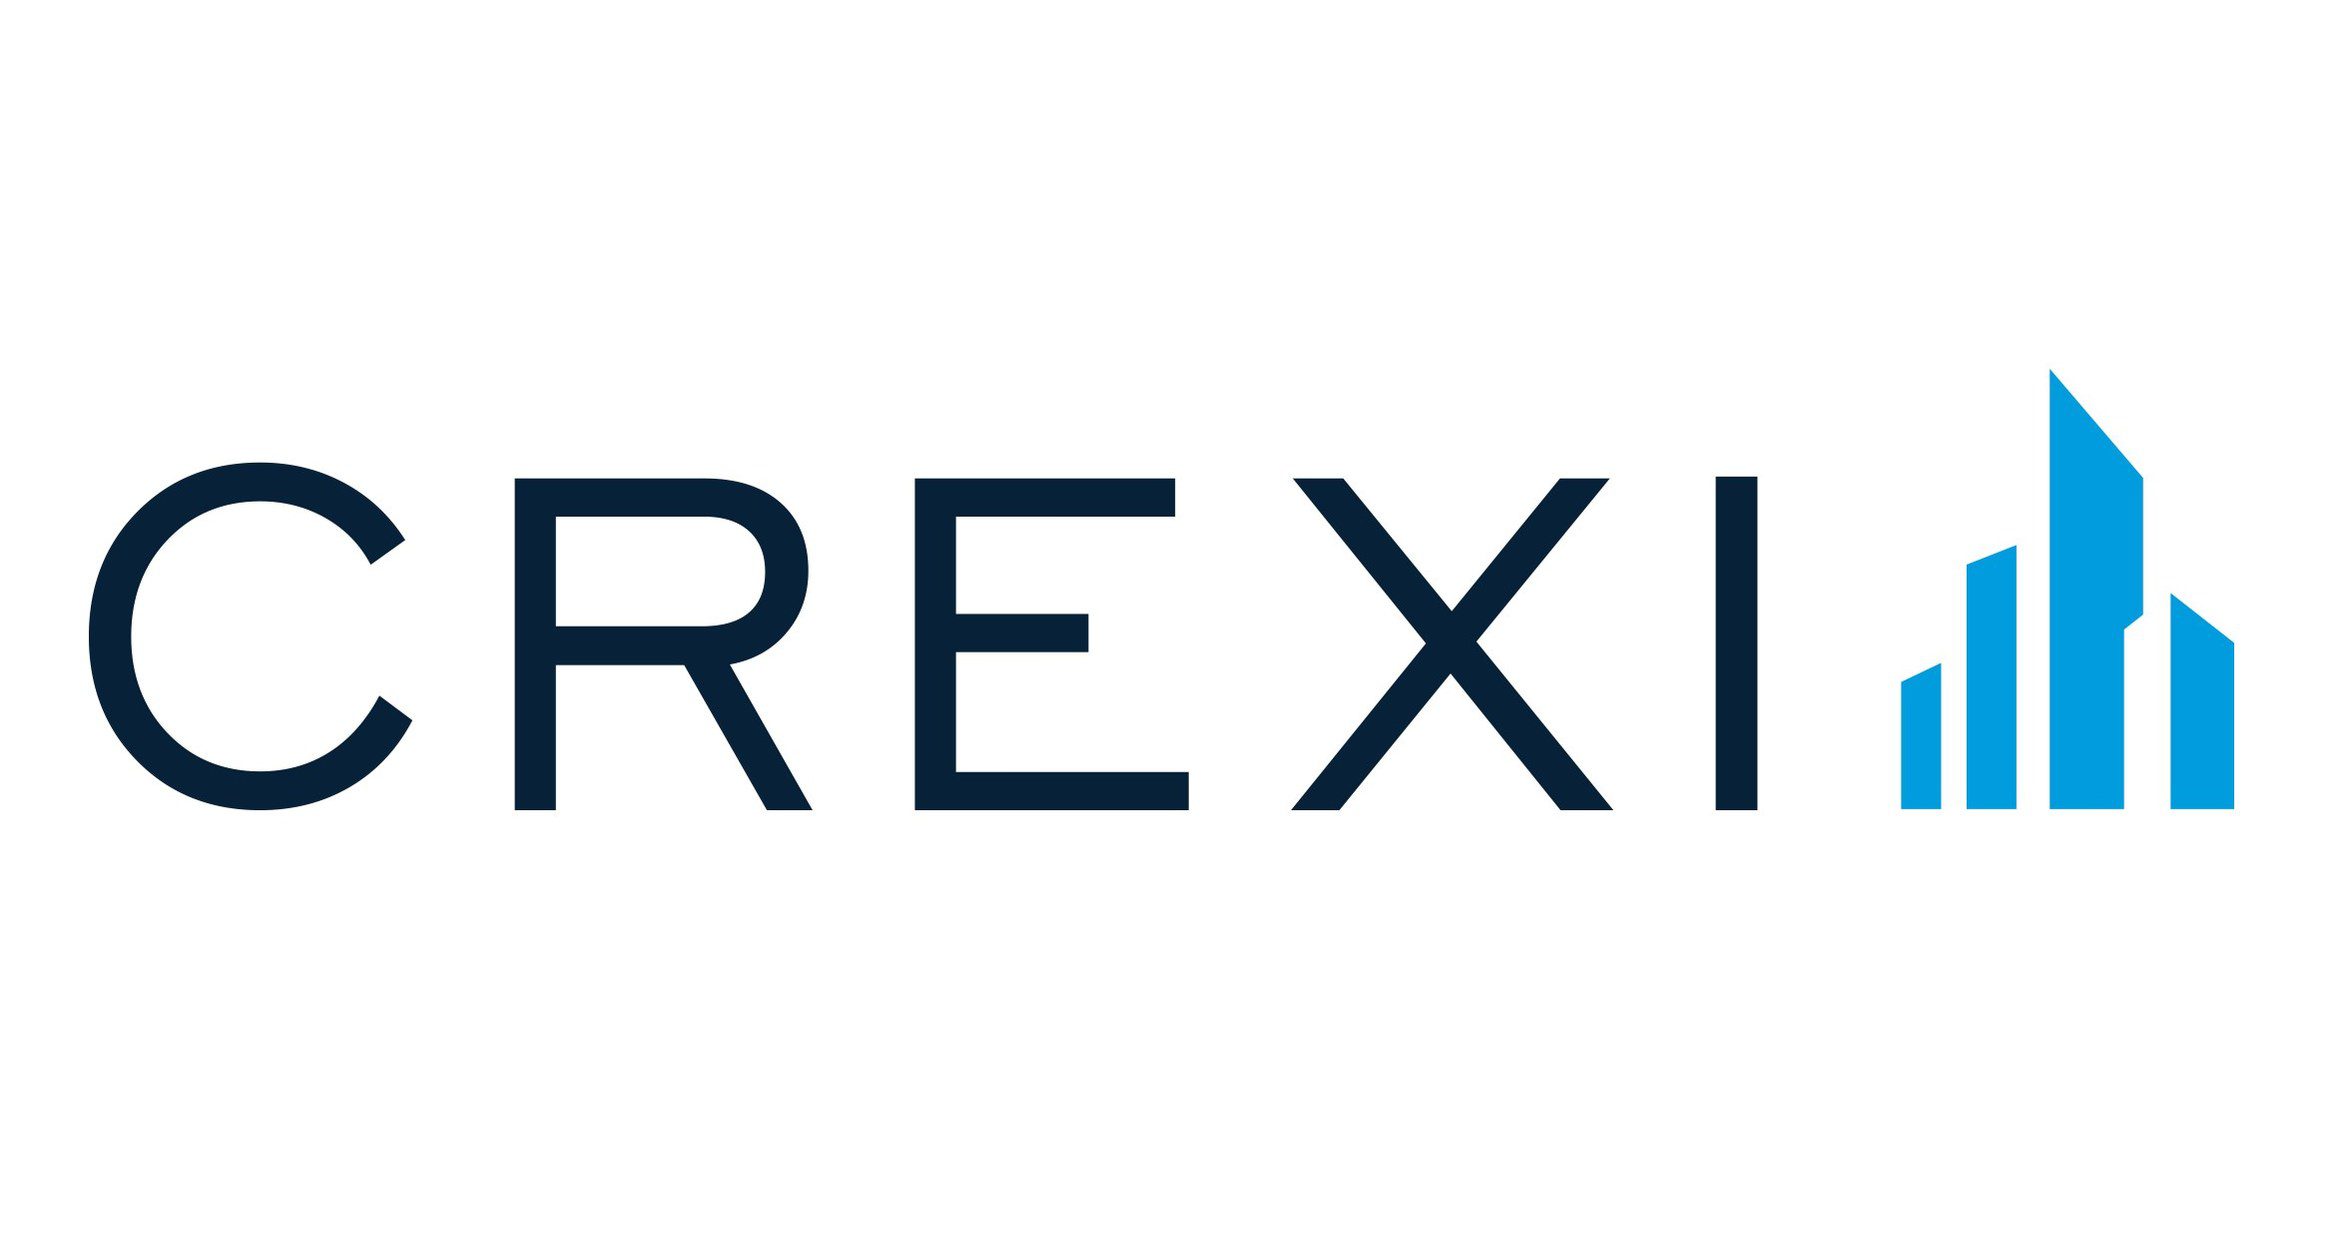 Official Crexi logo